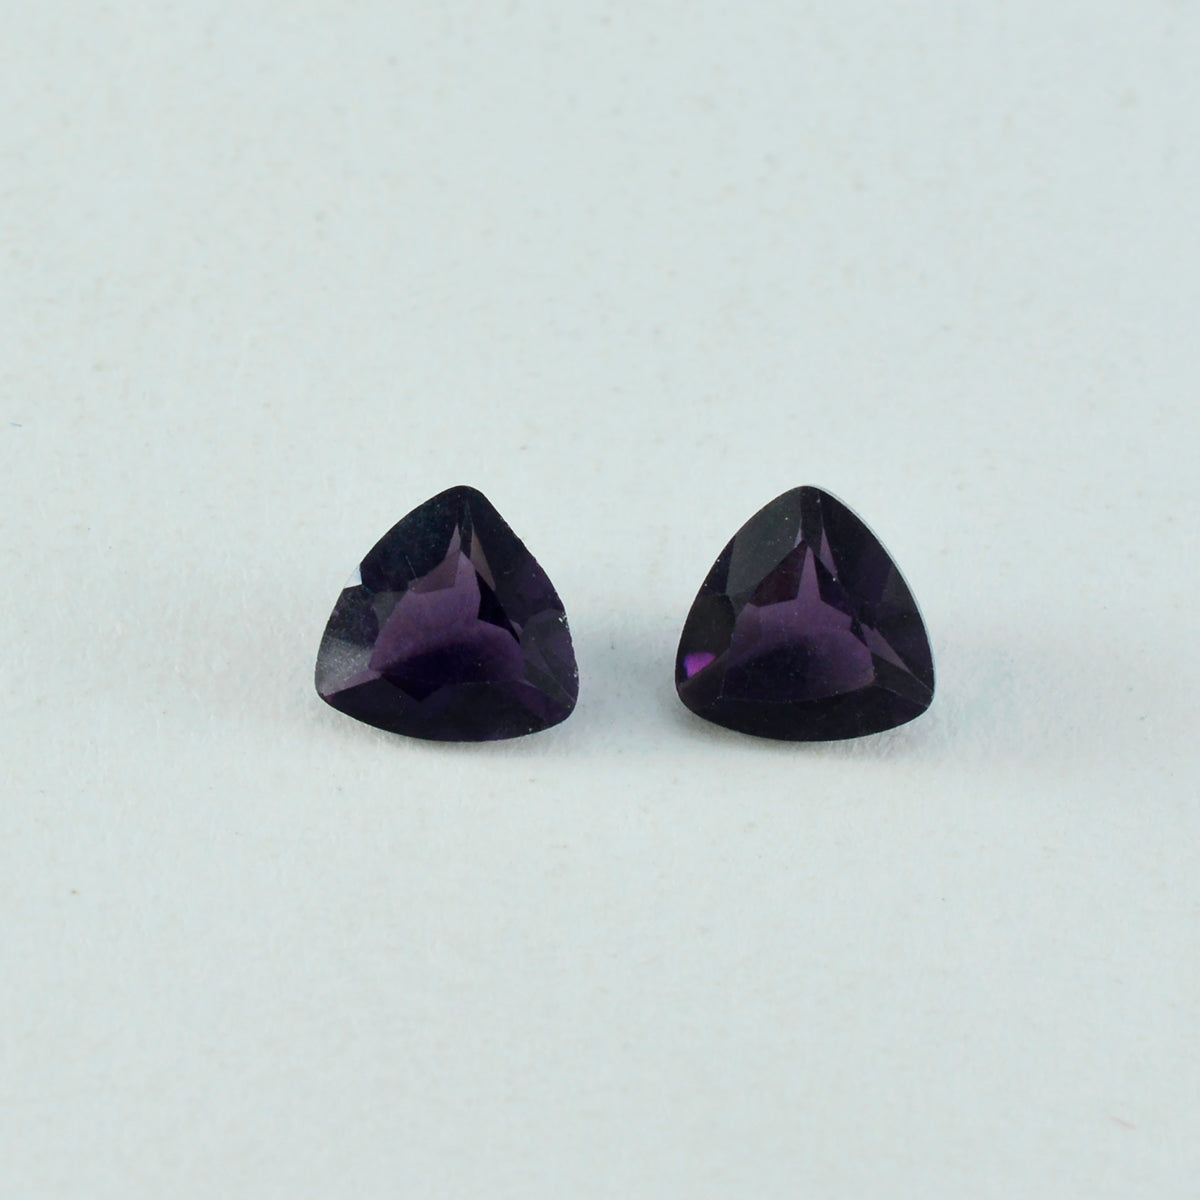 Riyogems 1 pièce d'améthyste violette cz à facettes 13x13mm en forme de trillion, belle qualité, pierre précieuse en vrac